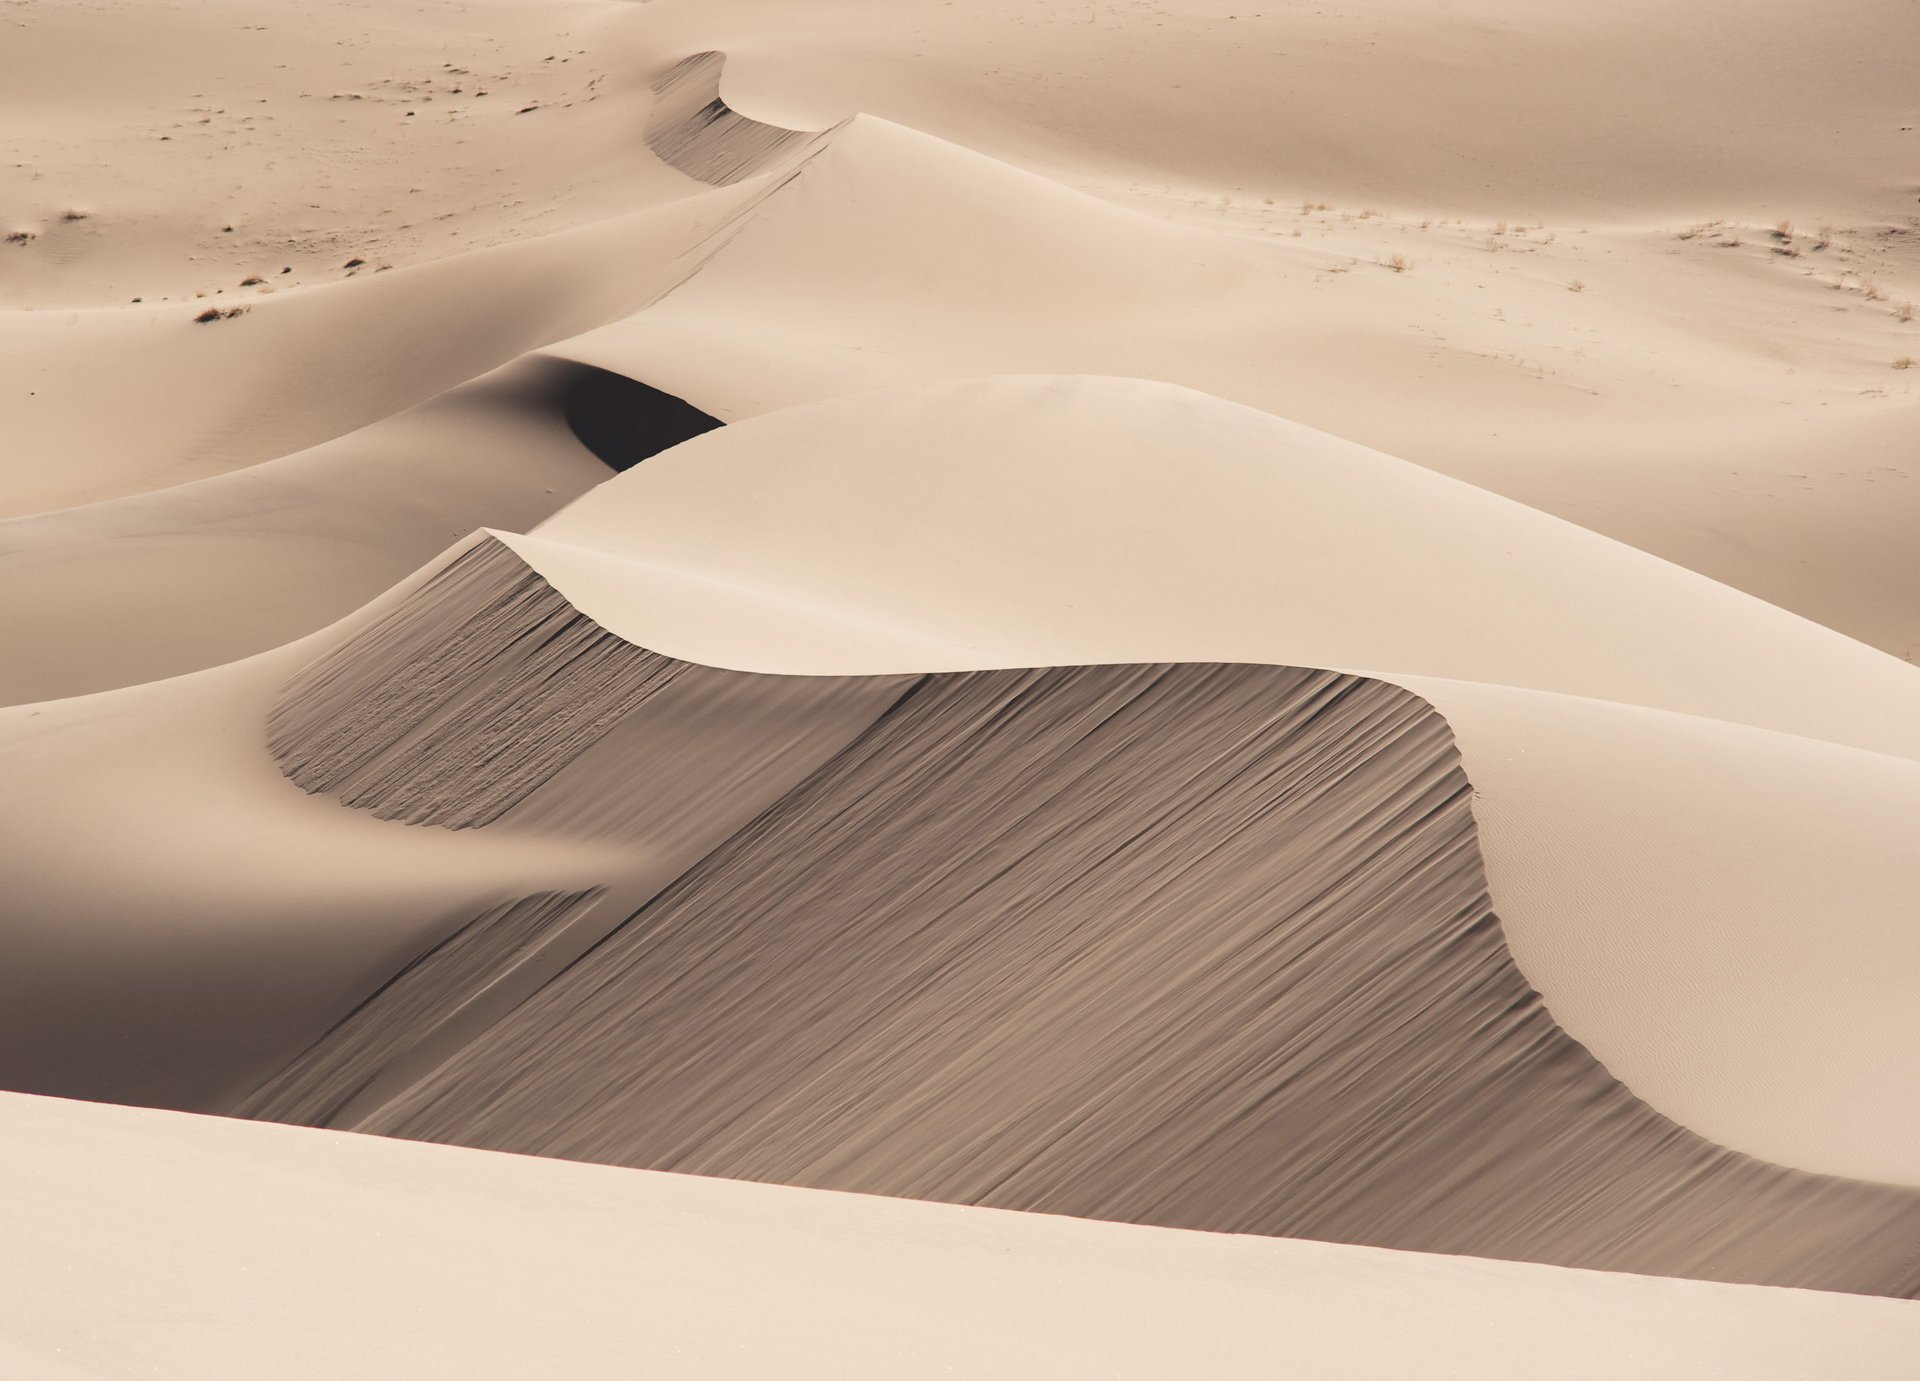 Endless gray desert sands